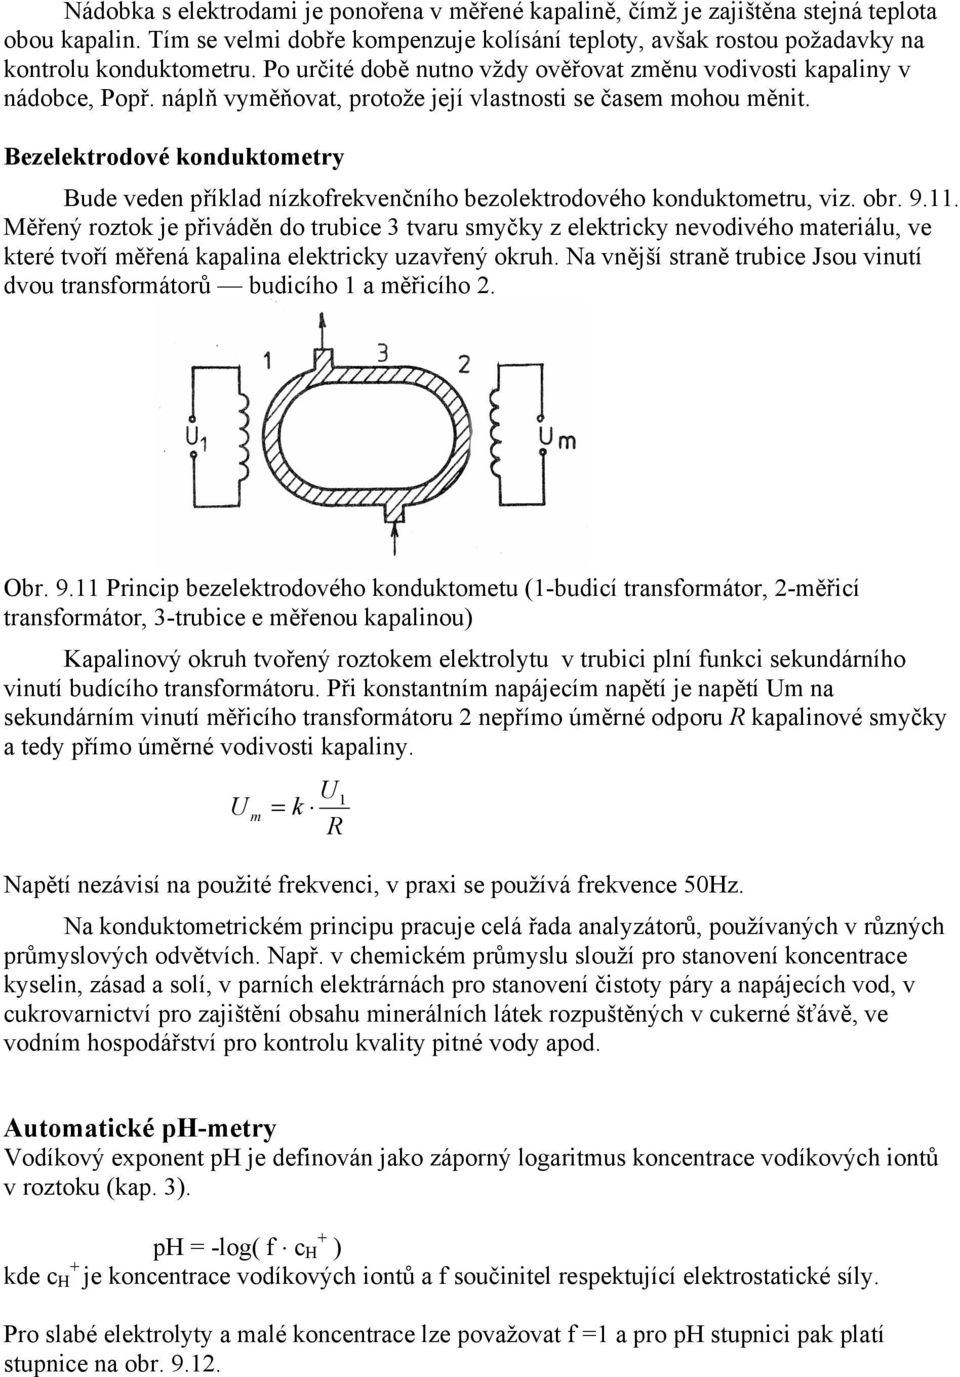 Bezelektrodové konduktometry Bude veden příklad nízkofrekvenčního bezolektrodového konduktometru, viz. obr. 9.11.